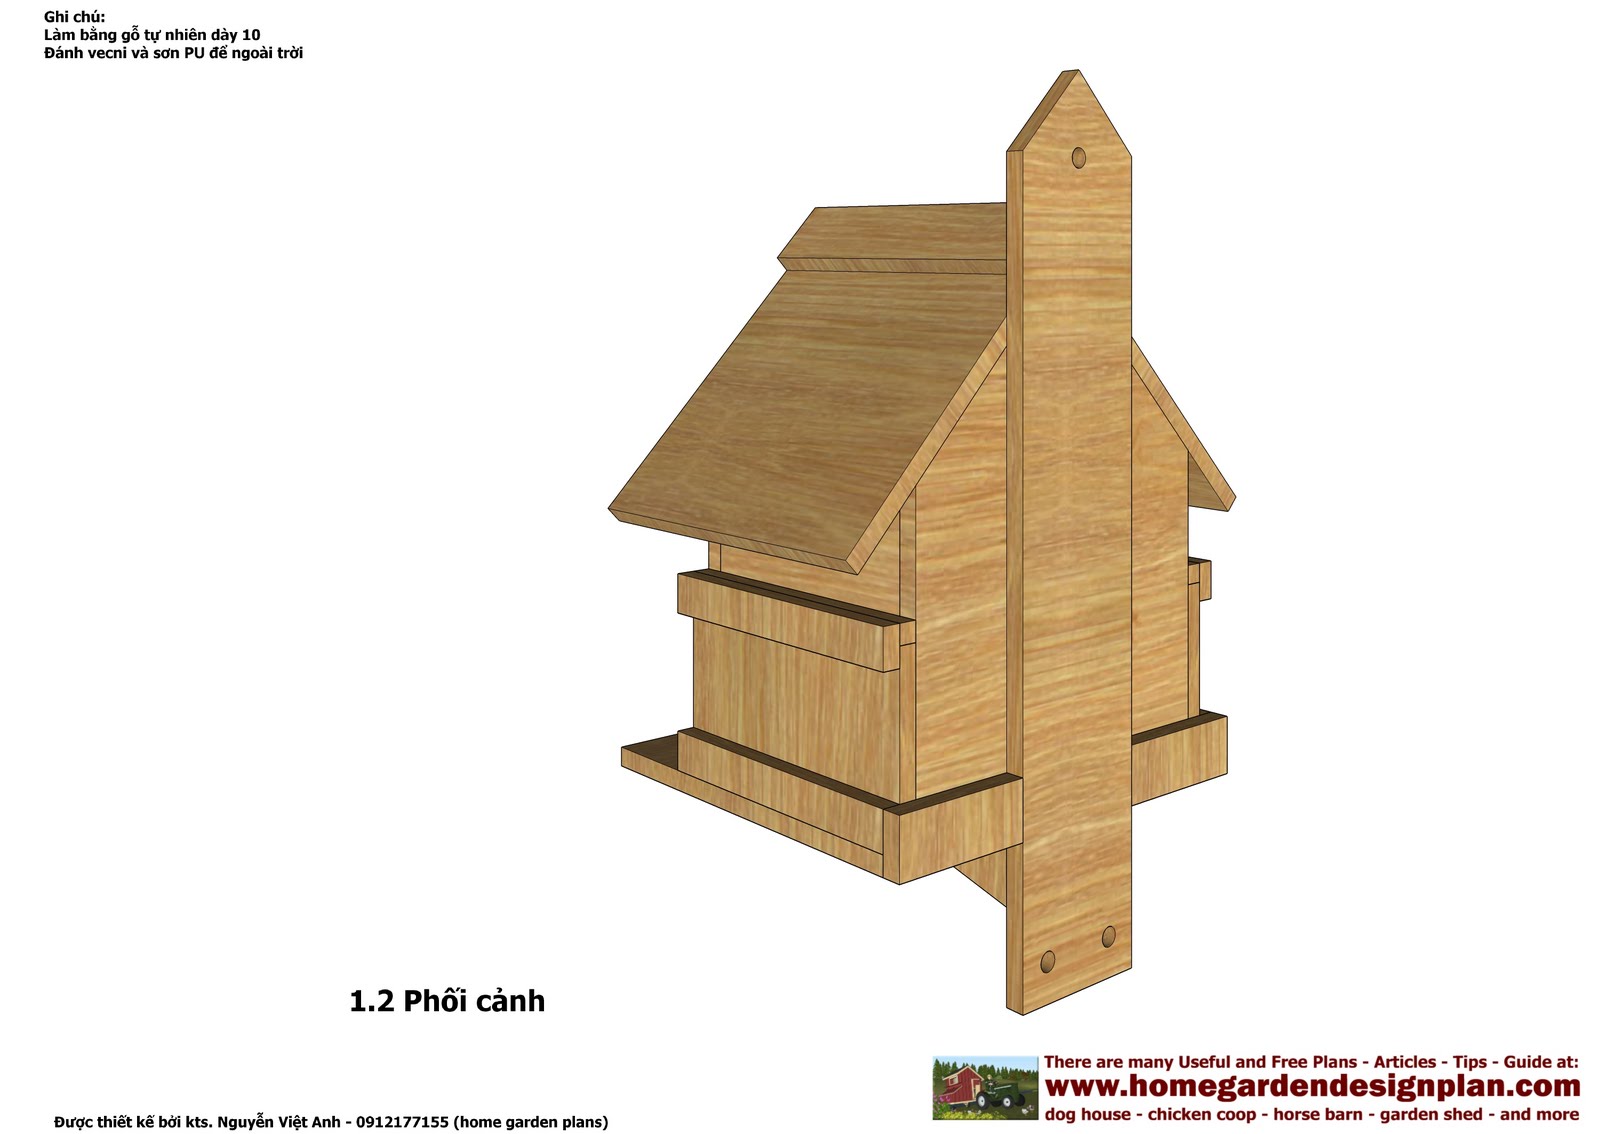  Bird Feeder Post Plans besides Wooden Bird Feeder Plans. on free